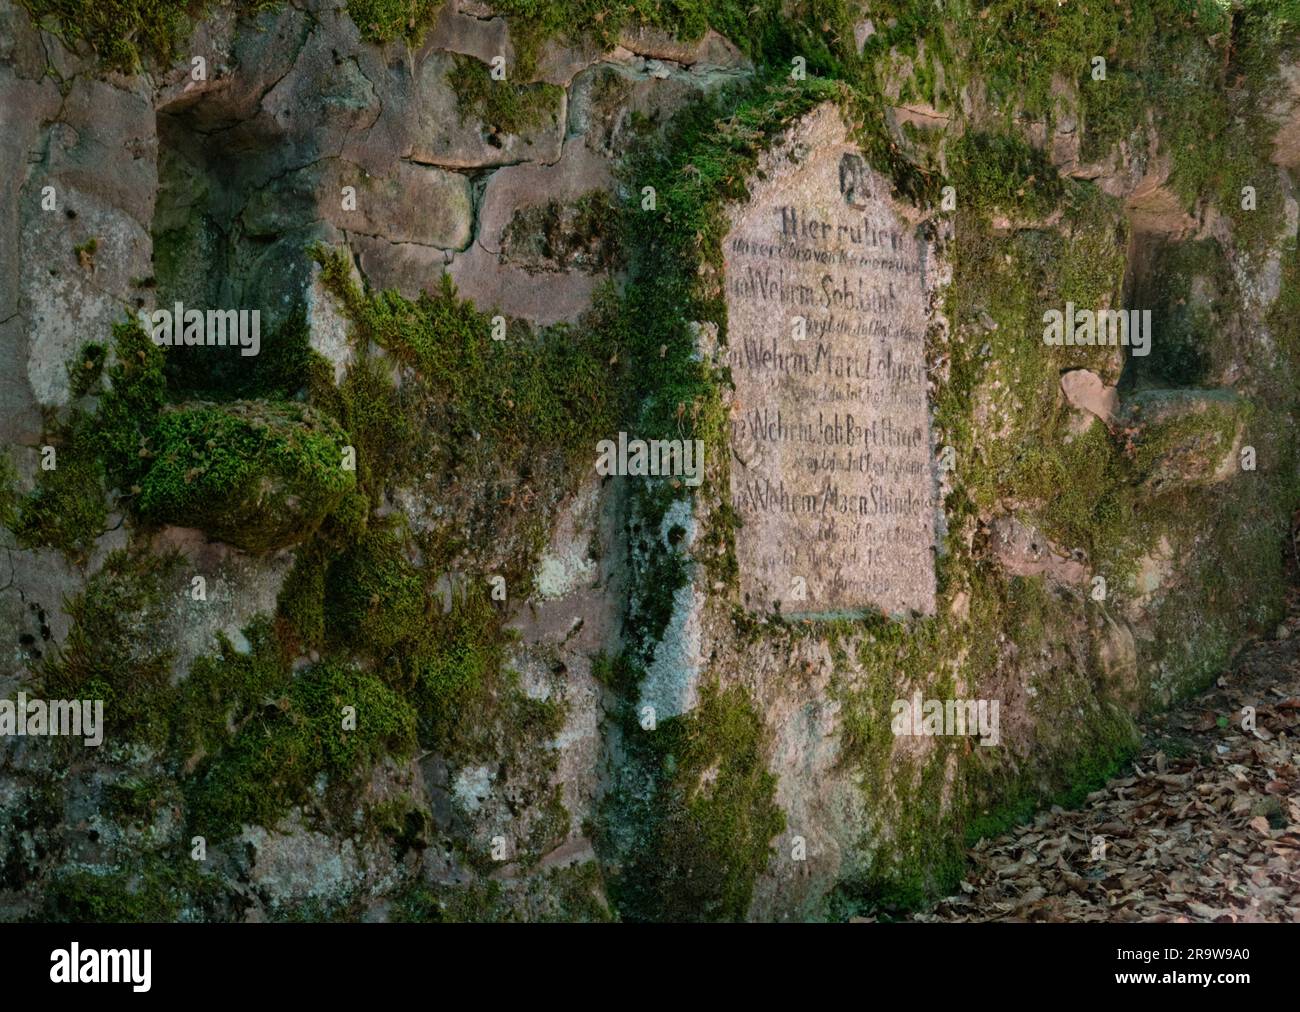 Resti della prima guerra mondiale: Un vecchio cimitero tedesco dimenticato in una foresta nei Vosgi francesi, nomi di soldati caduti scolpiti nella pietra Foto Stock